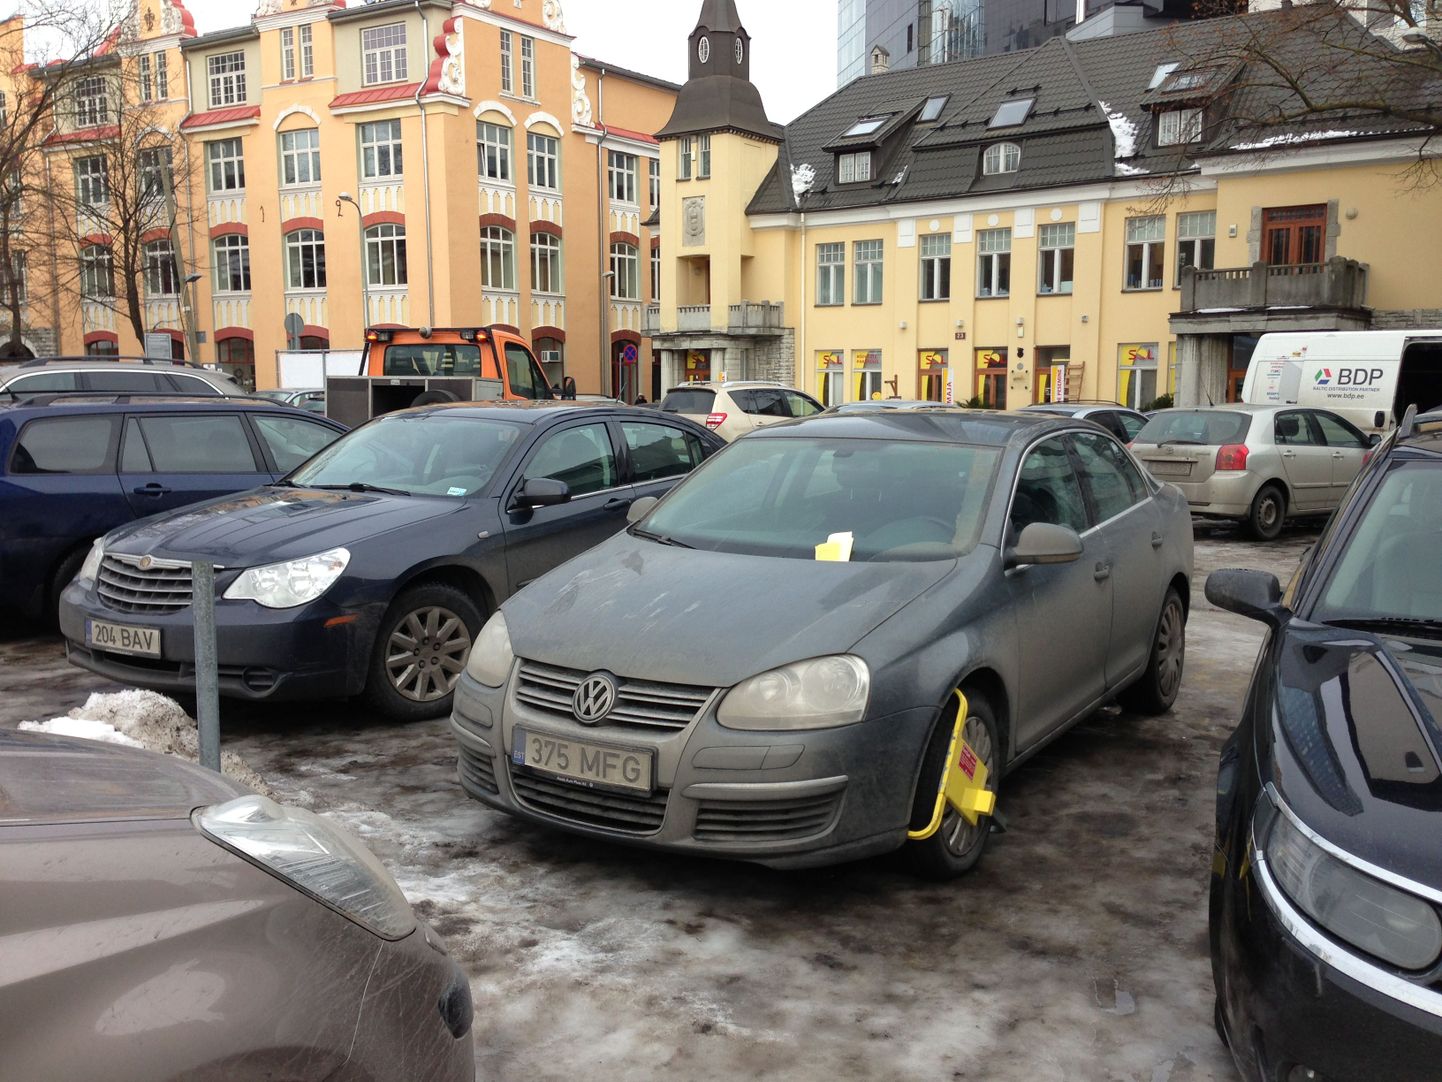 Täna viidi Europarki tasulisest parklast üks auto minema, teisele aga paigaldati rattatõkis.